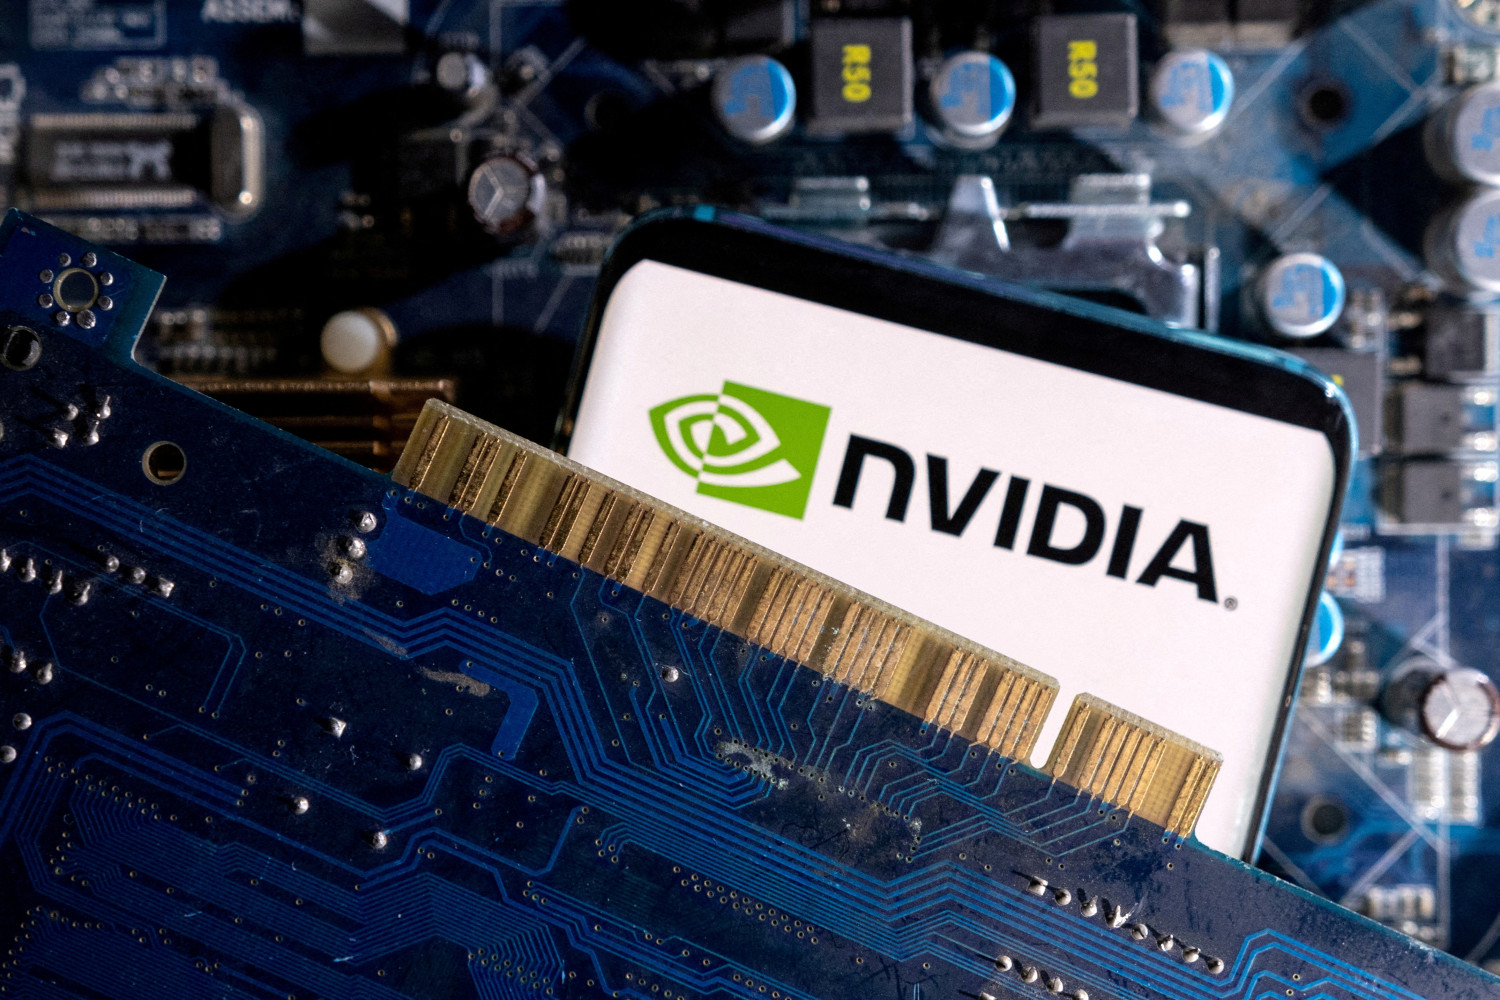 Nvidia ejecuta su split 10 por 1 para hacer sus títulos más accesibles